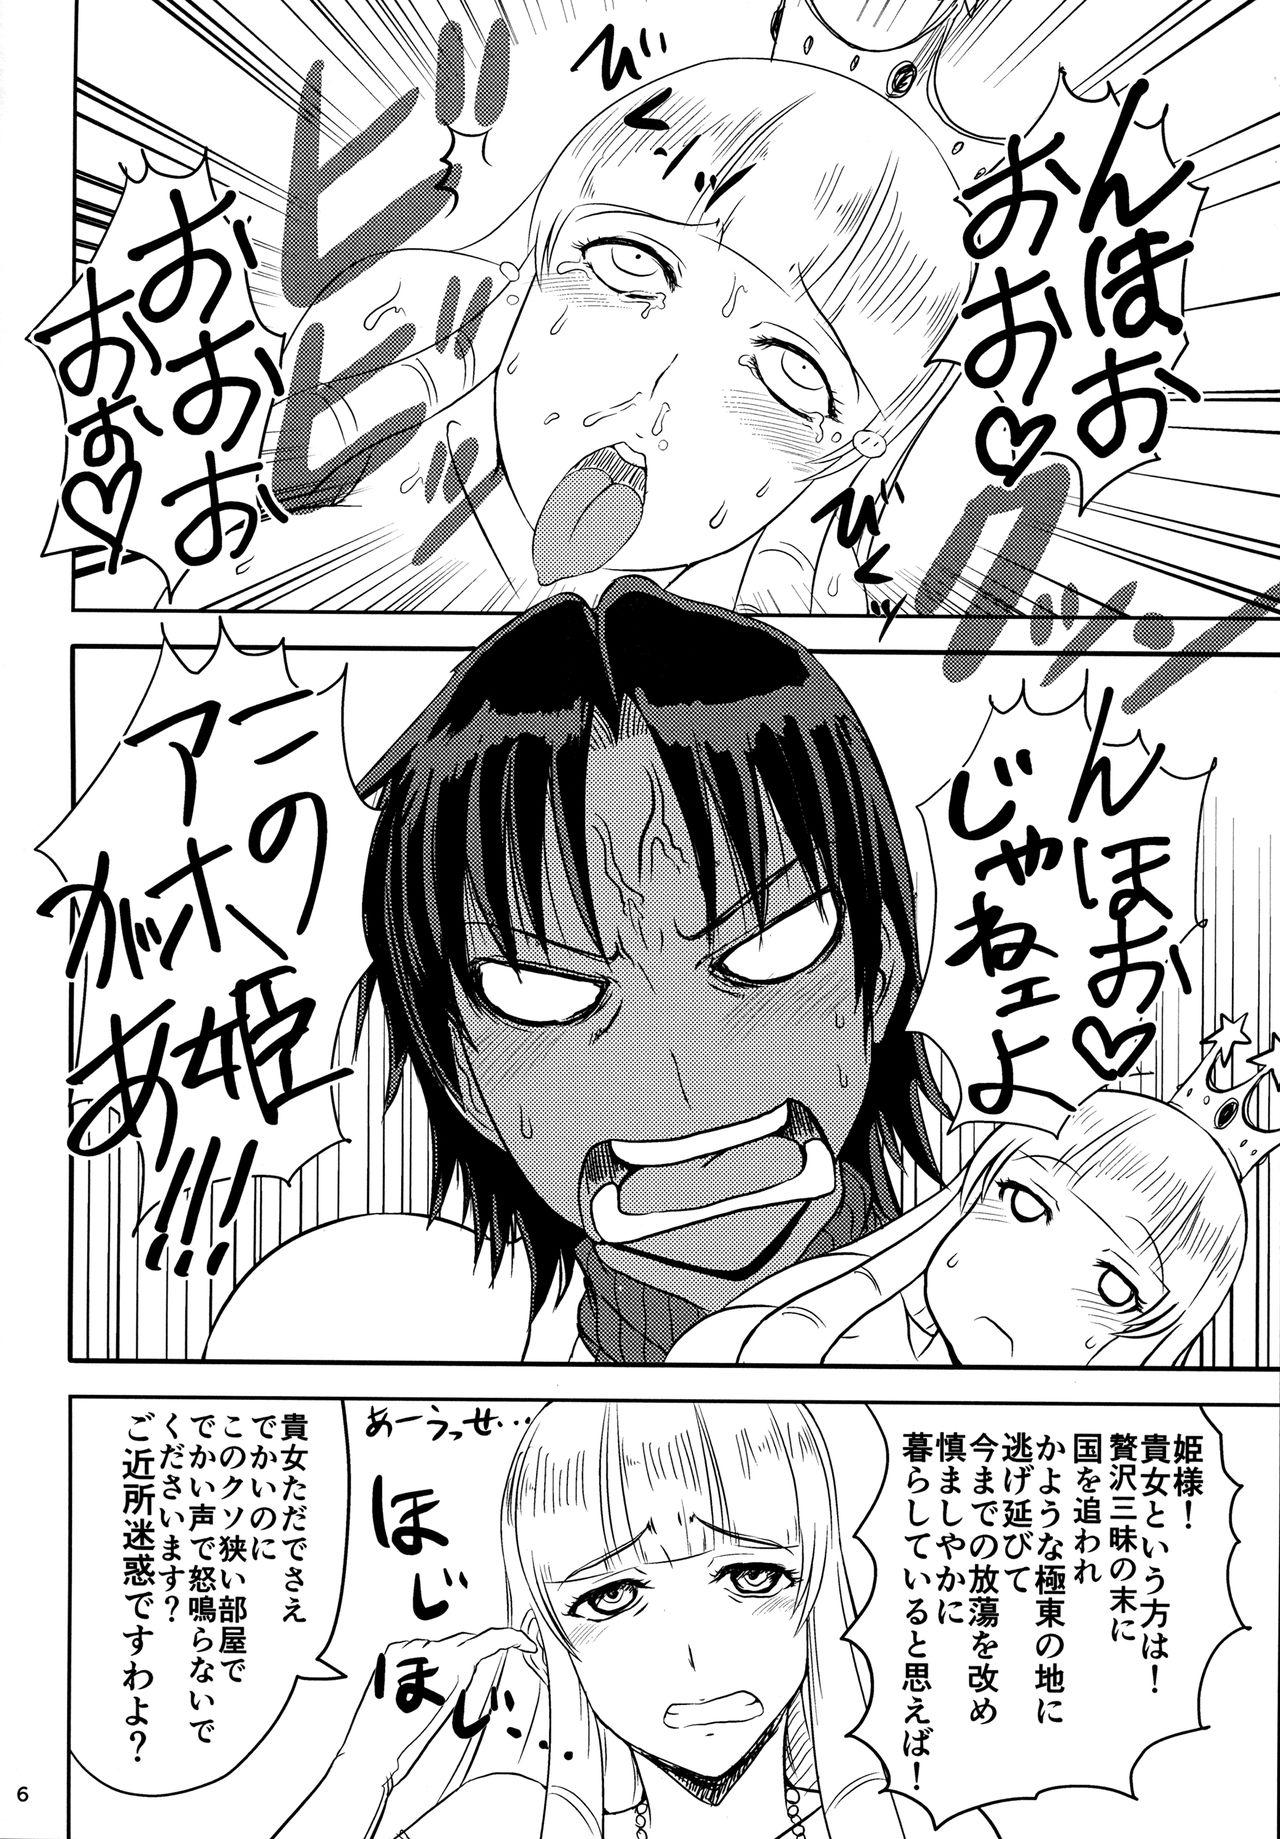 Groping Onna Kishi wa Kasshoku de Misoji Shojo Shotacon no Ue, Kinpatsu Ouji ga Osuki. Ametur Porn - Page 7